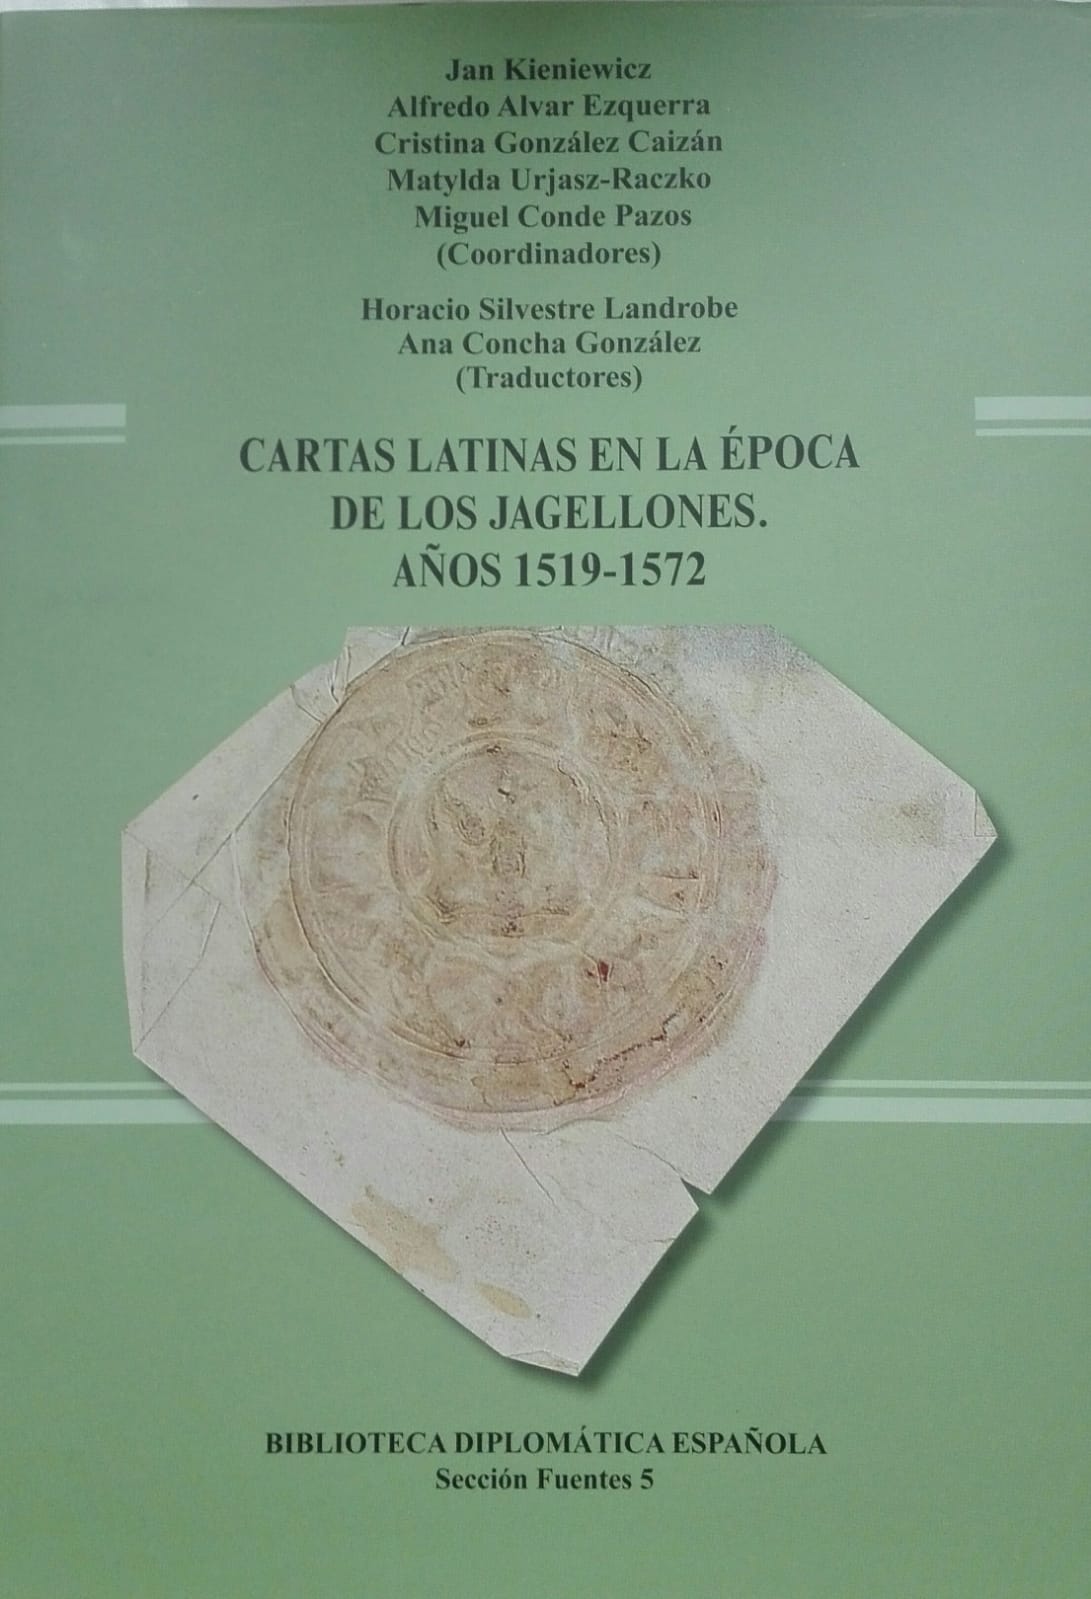 Book Cover: Cartas latinas en la época de los Jagellones. Años 1519-1572